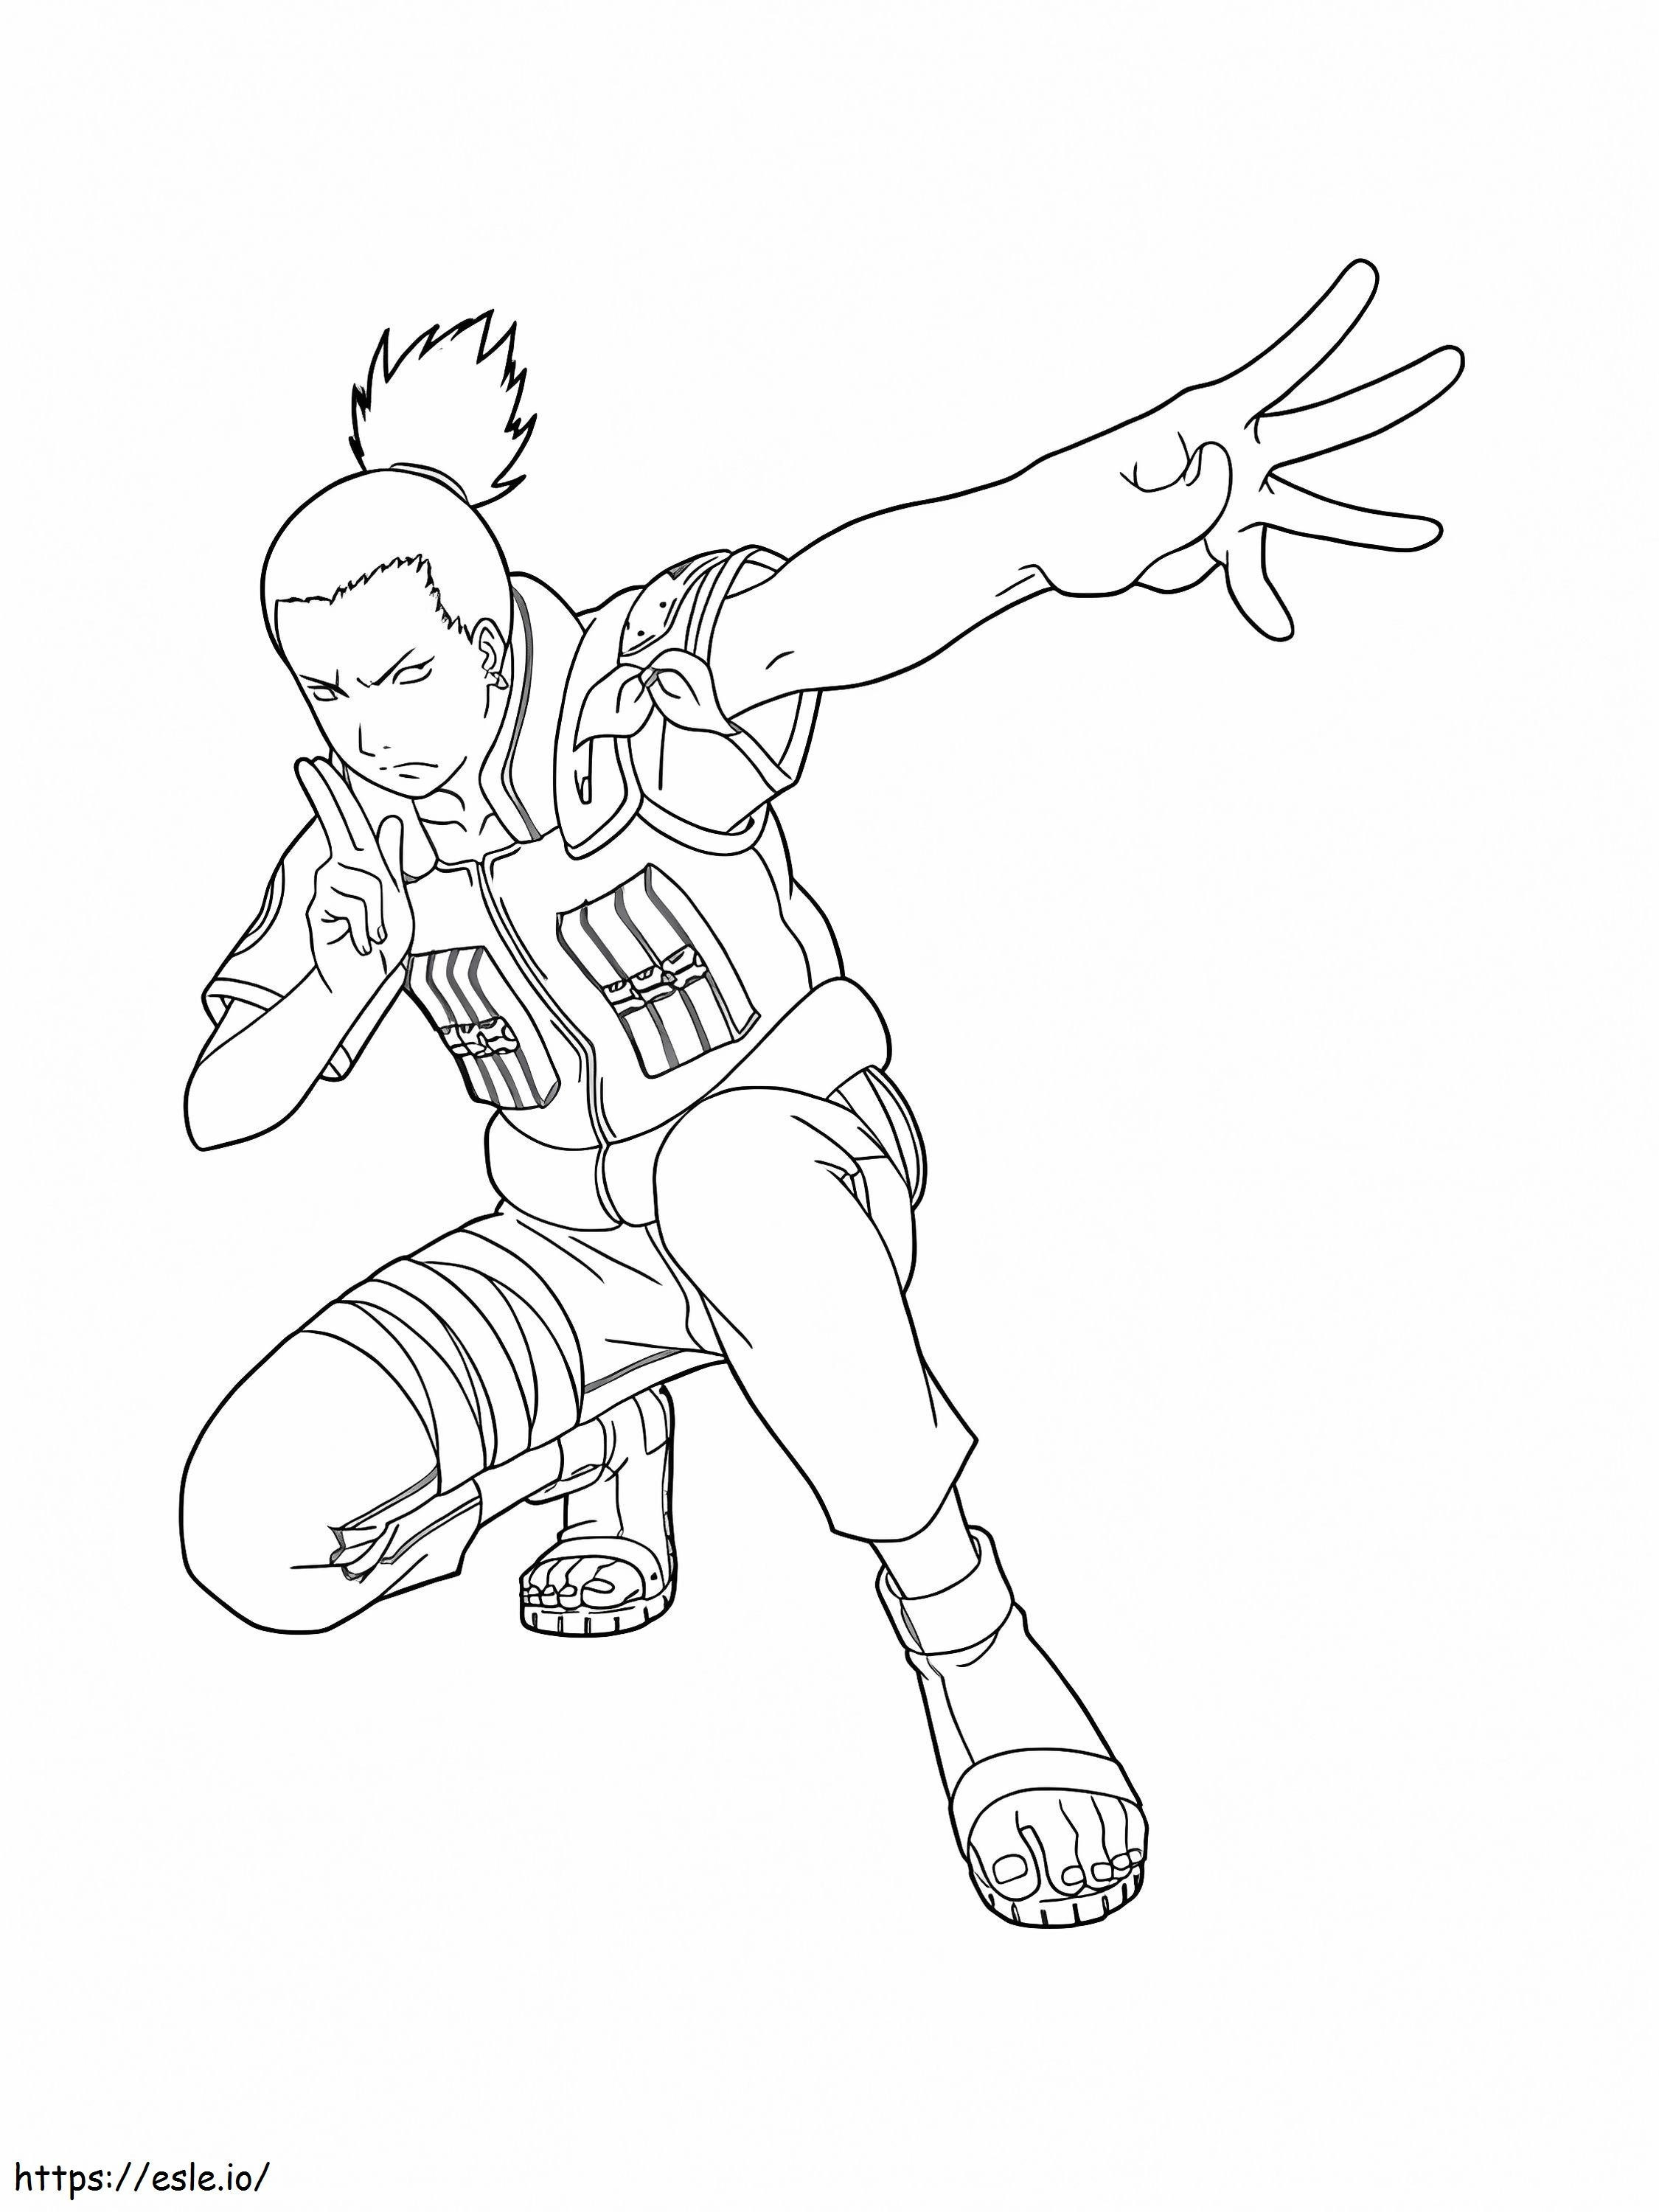 Shikamaru Luchando ausmalbilder